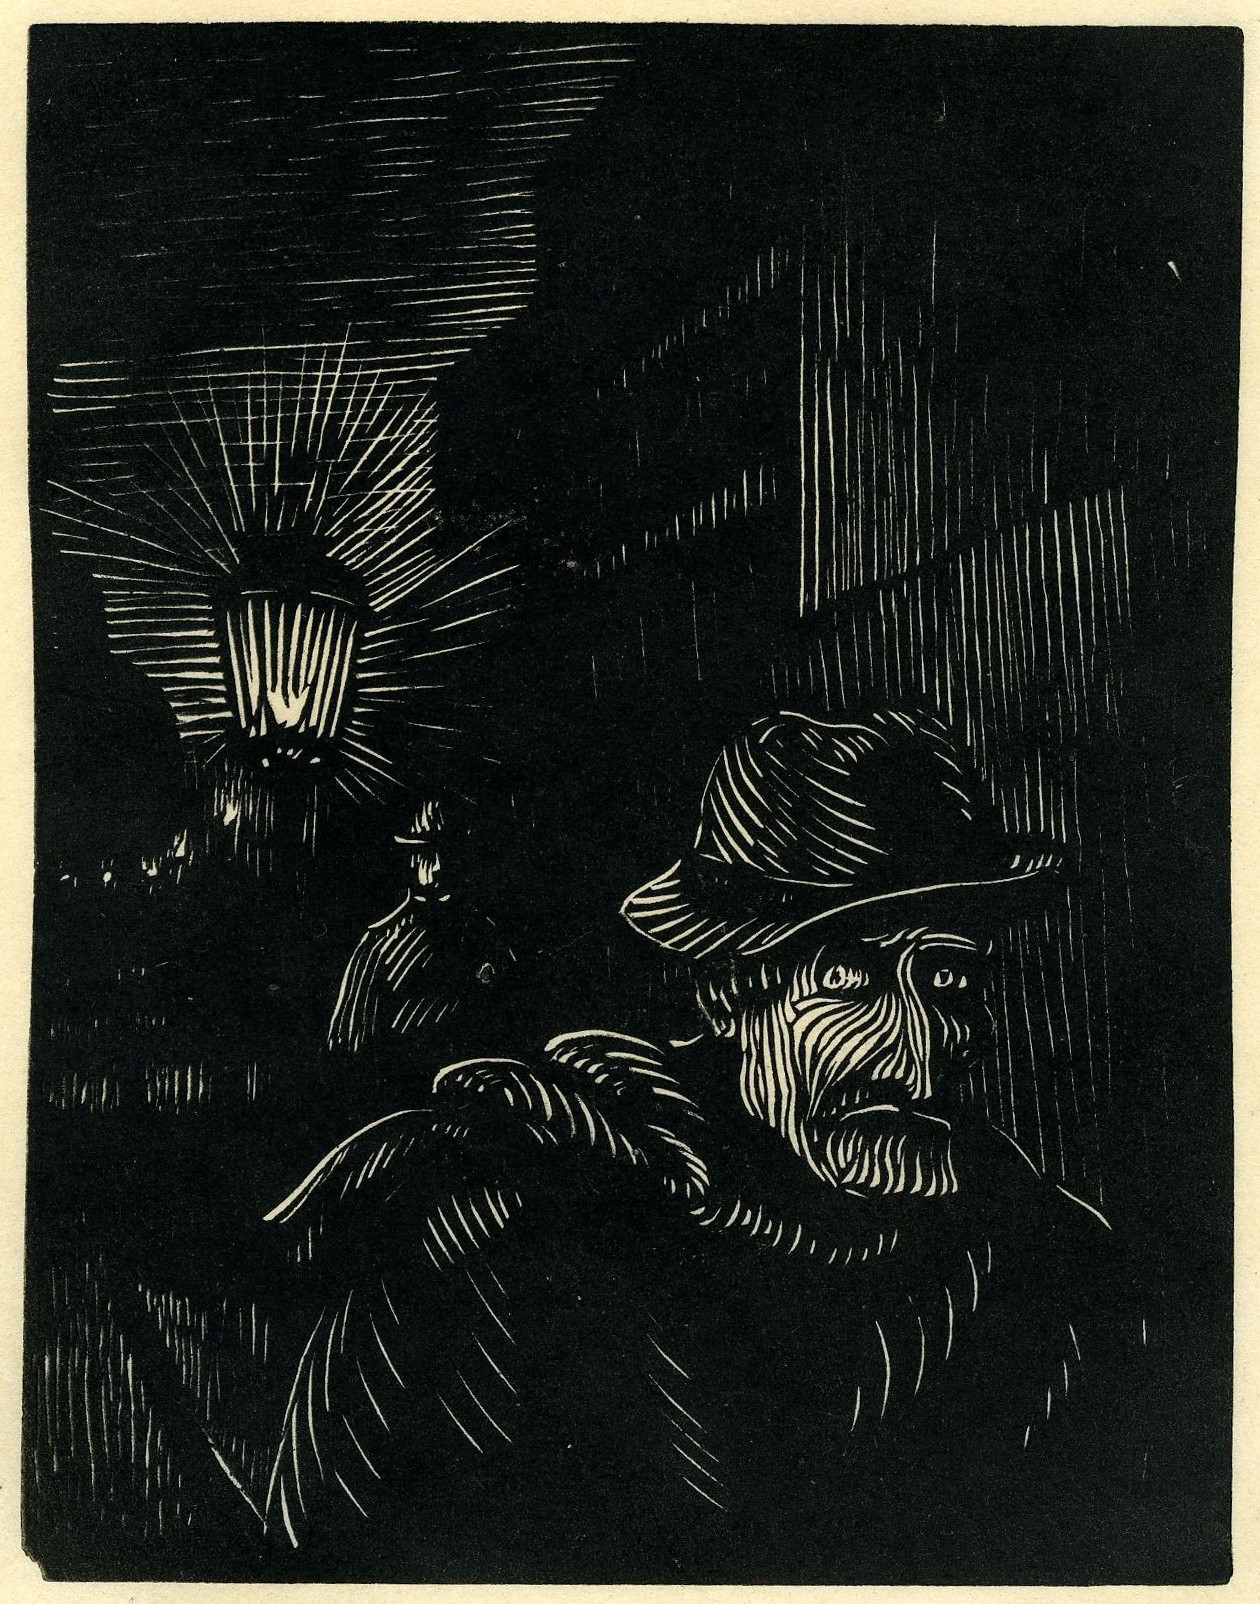 Paul-Émile Colin, Homme des foules (Suite d'estampes inspirées des Histoires extraordinaires d'Edgar Allan Poe), 1894